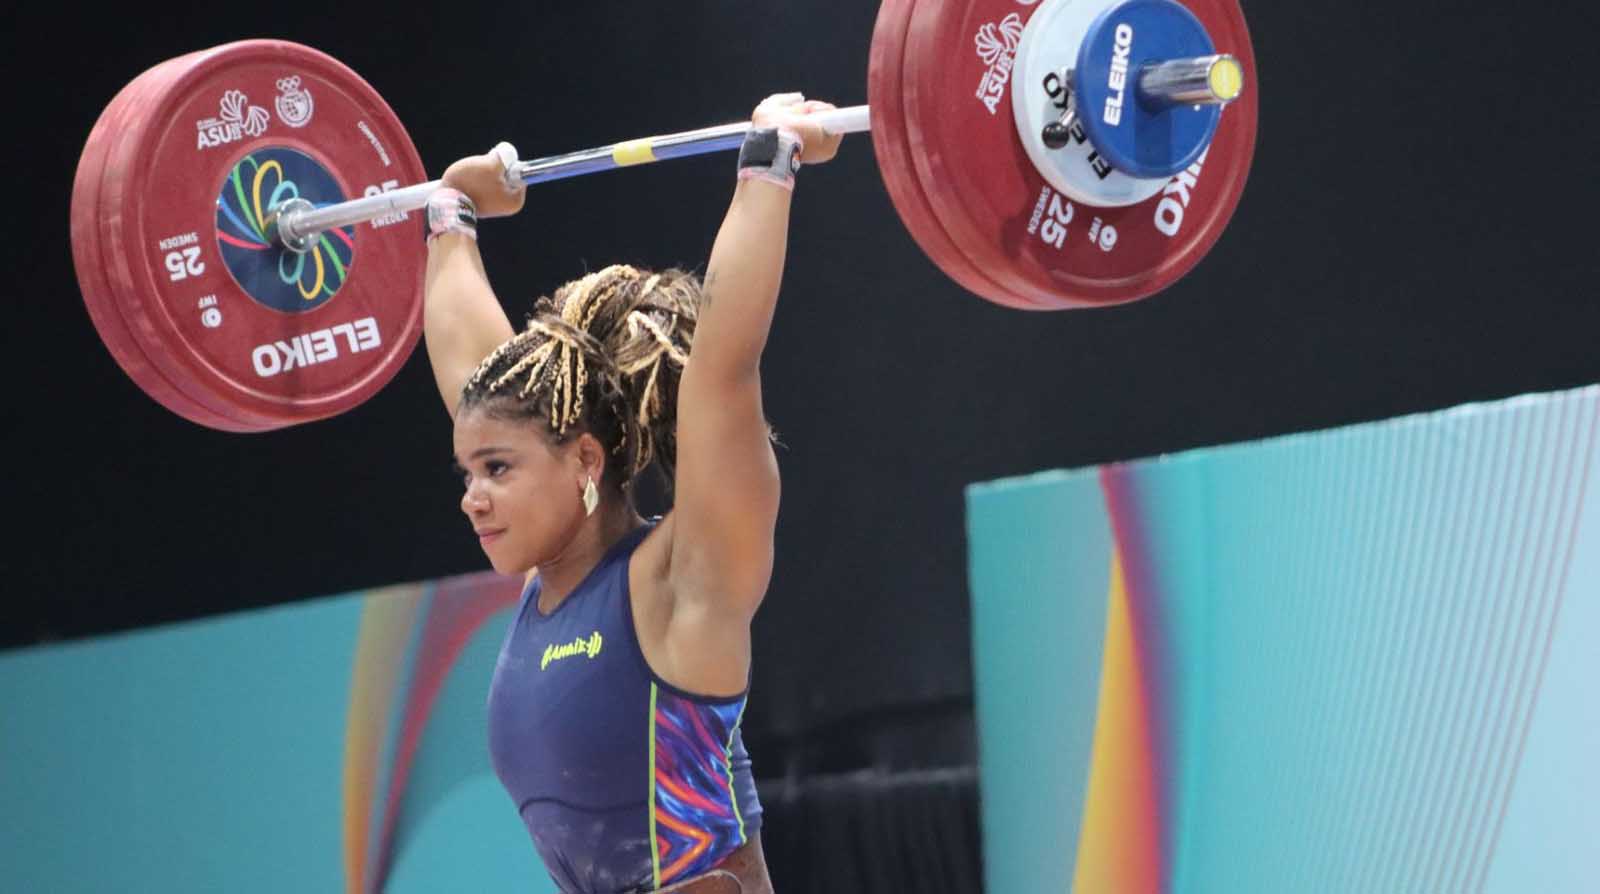 La ecuatoriana Angie Paola Palacios ganó la medalla de oro del levantamiento de pesas, categoría 76 kg, de los Juegos Suramericanos Asunción 2022.